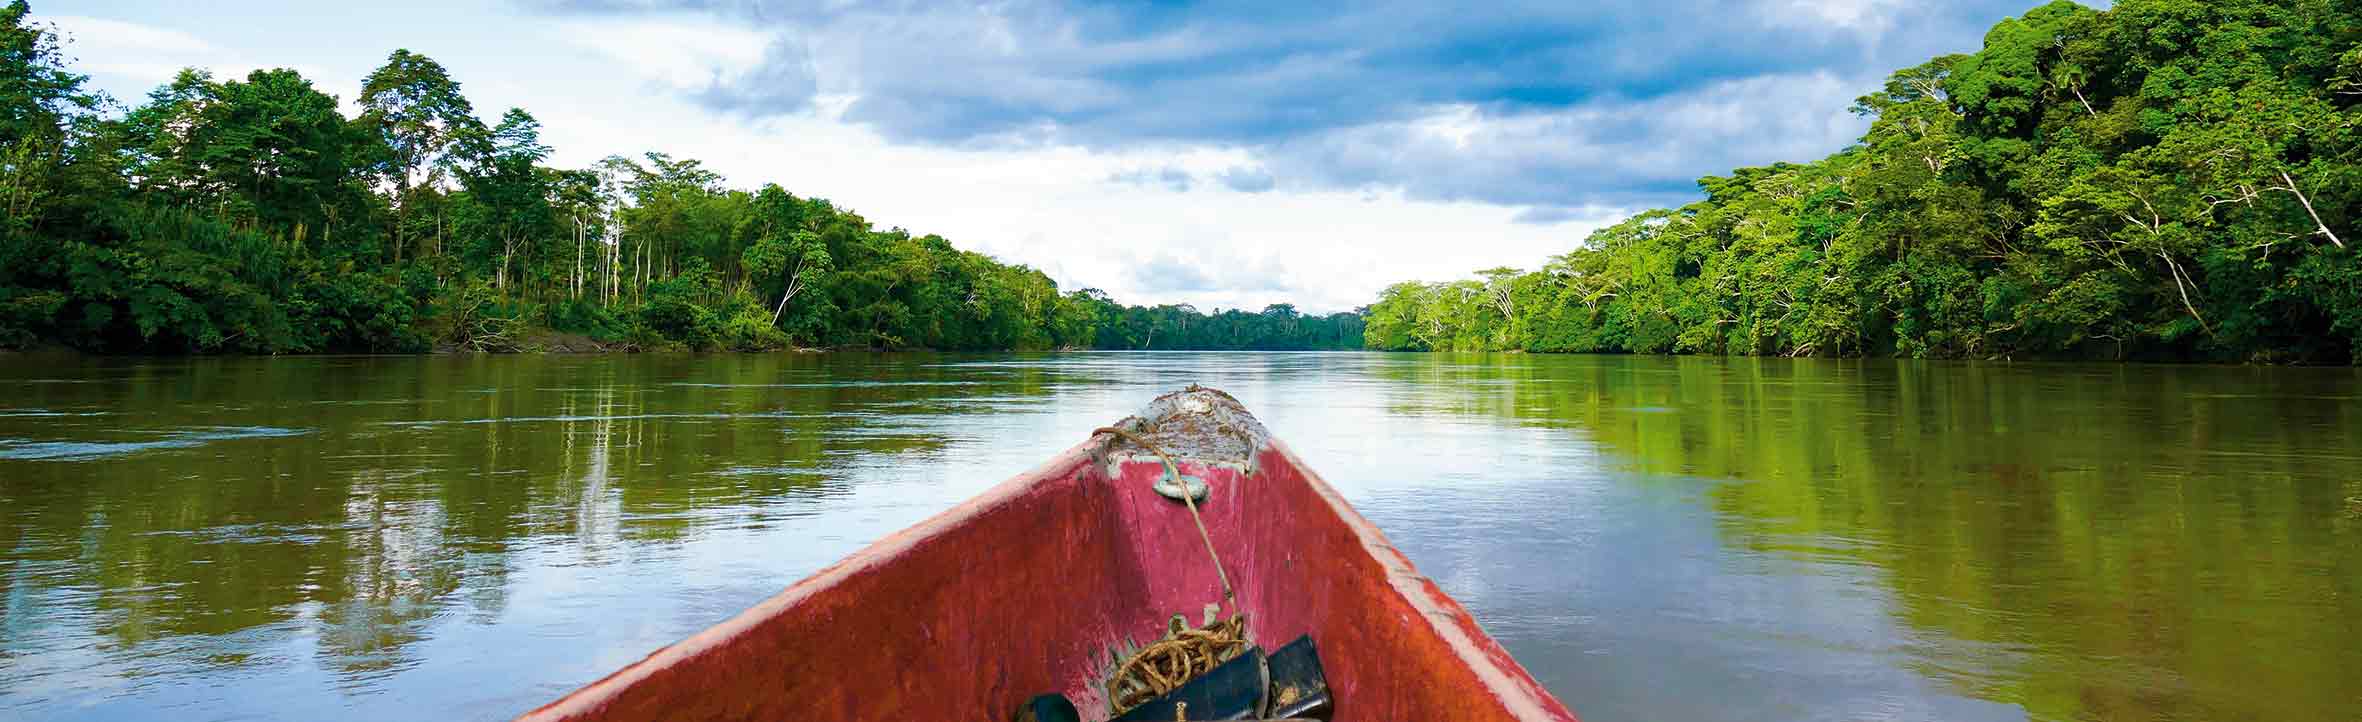 Bootsfahrt im Urwald von Ecuador